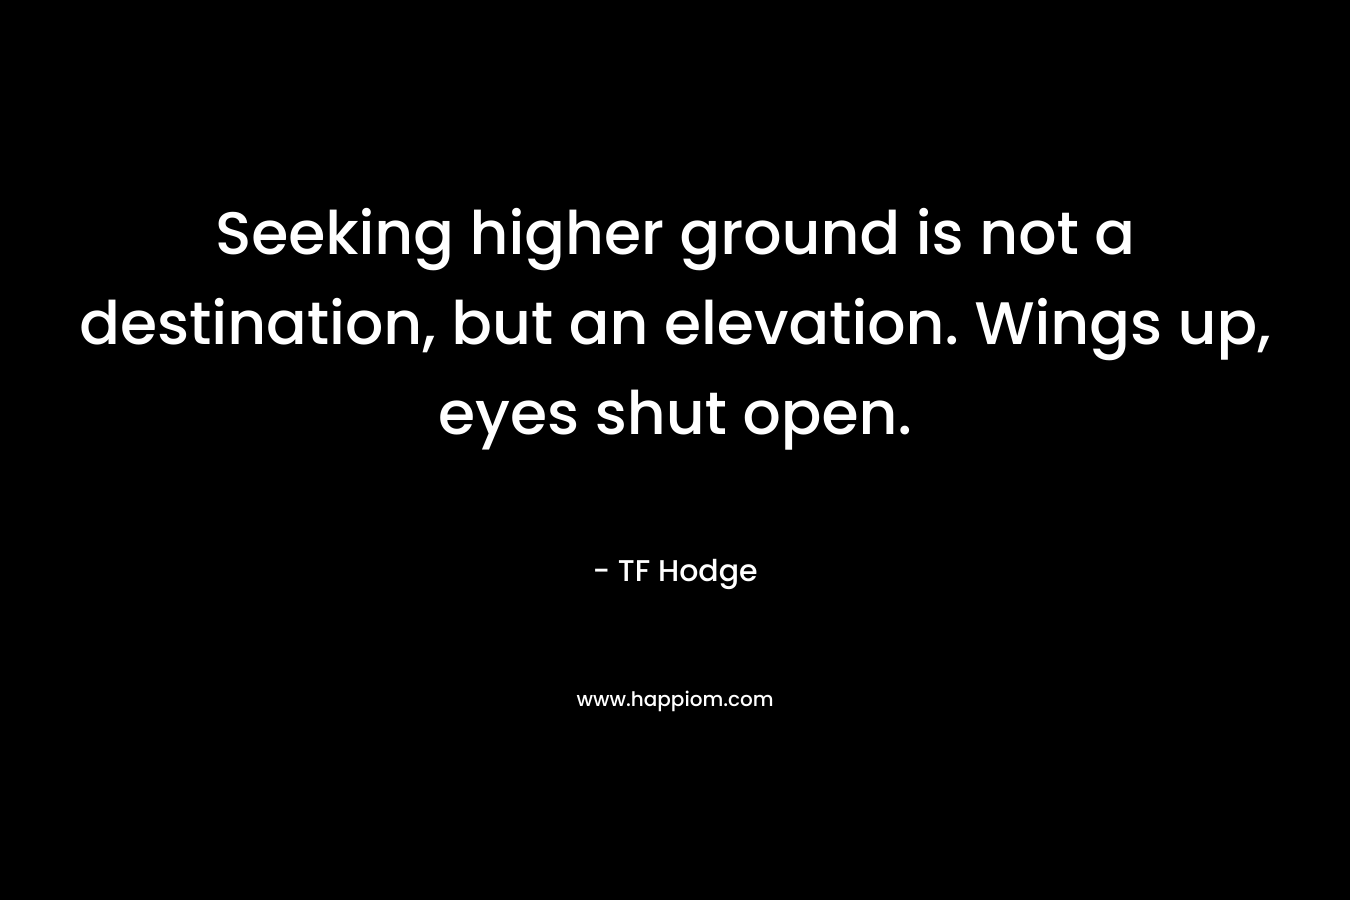 Seeking higher ground is not a destination, but an elevation. Wings up, eyes shut open.